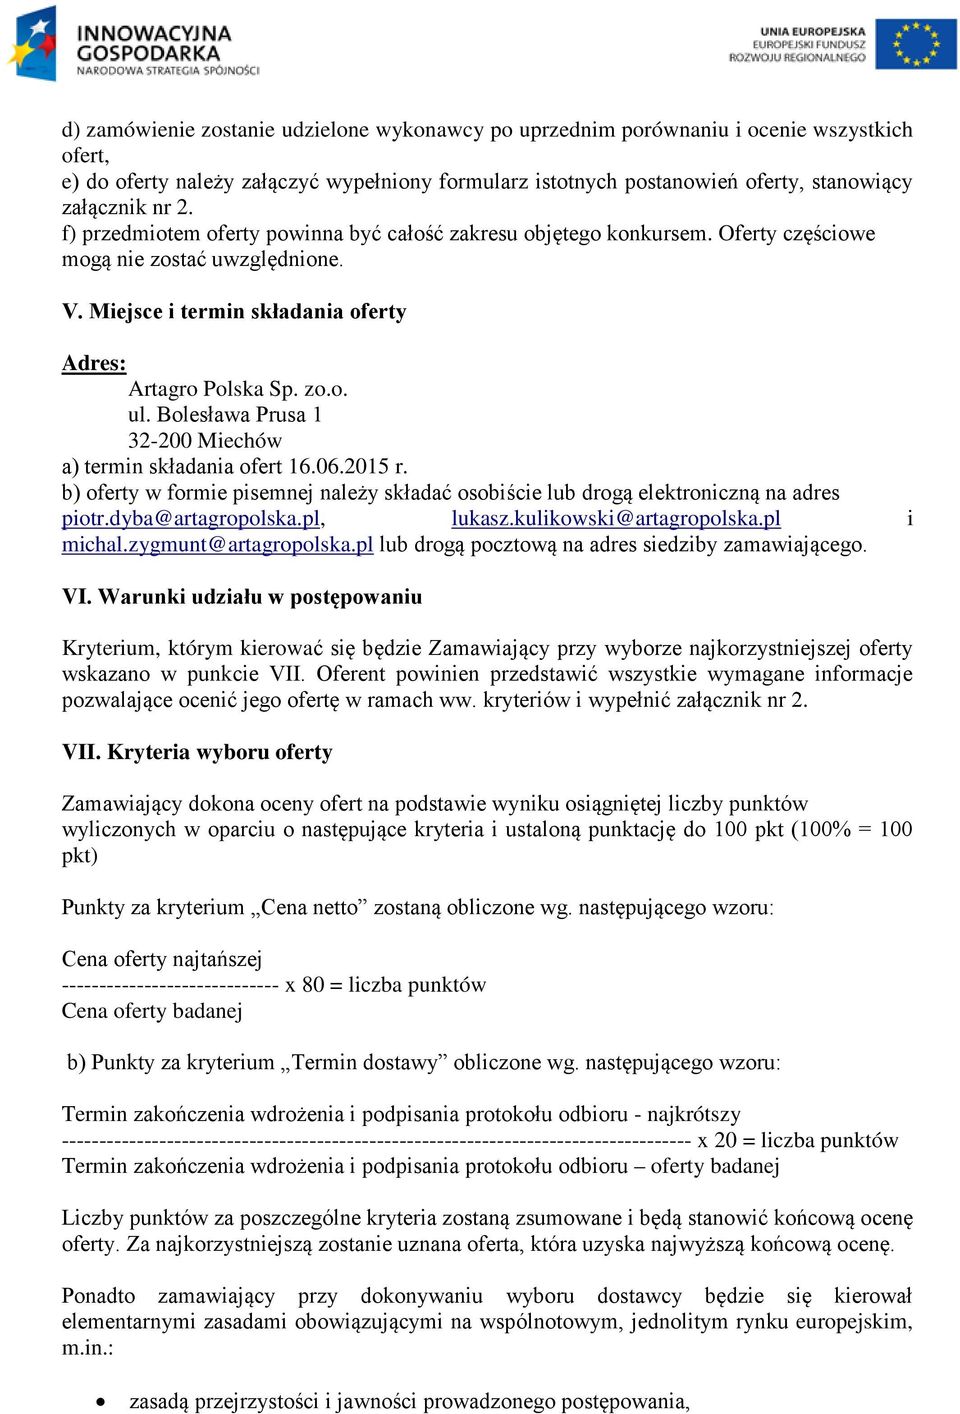 Bolesława Prusa 1 32-200 Miechów a) termin składania ofert 16.06.2015 r. b) oferty w formie pisemnej należy składać osobiście lub drogą elektroniczną na adres piotr.dyba@artagropolska.pl, lukasz.